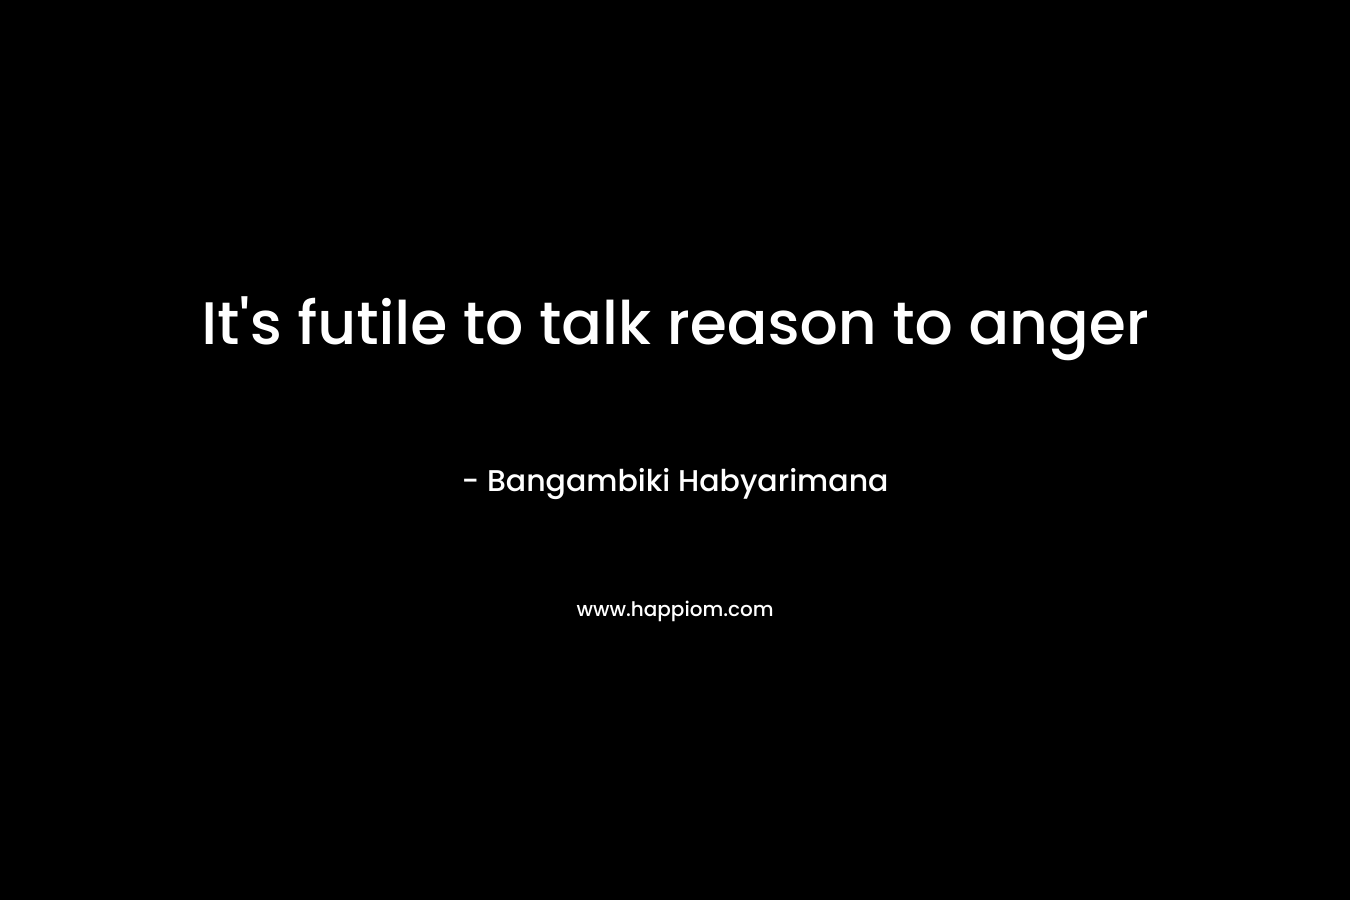 It's futile to talk reason to anger